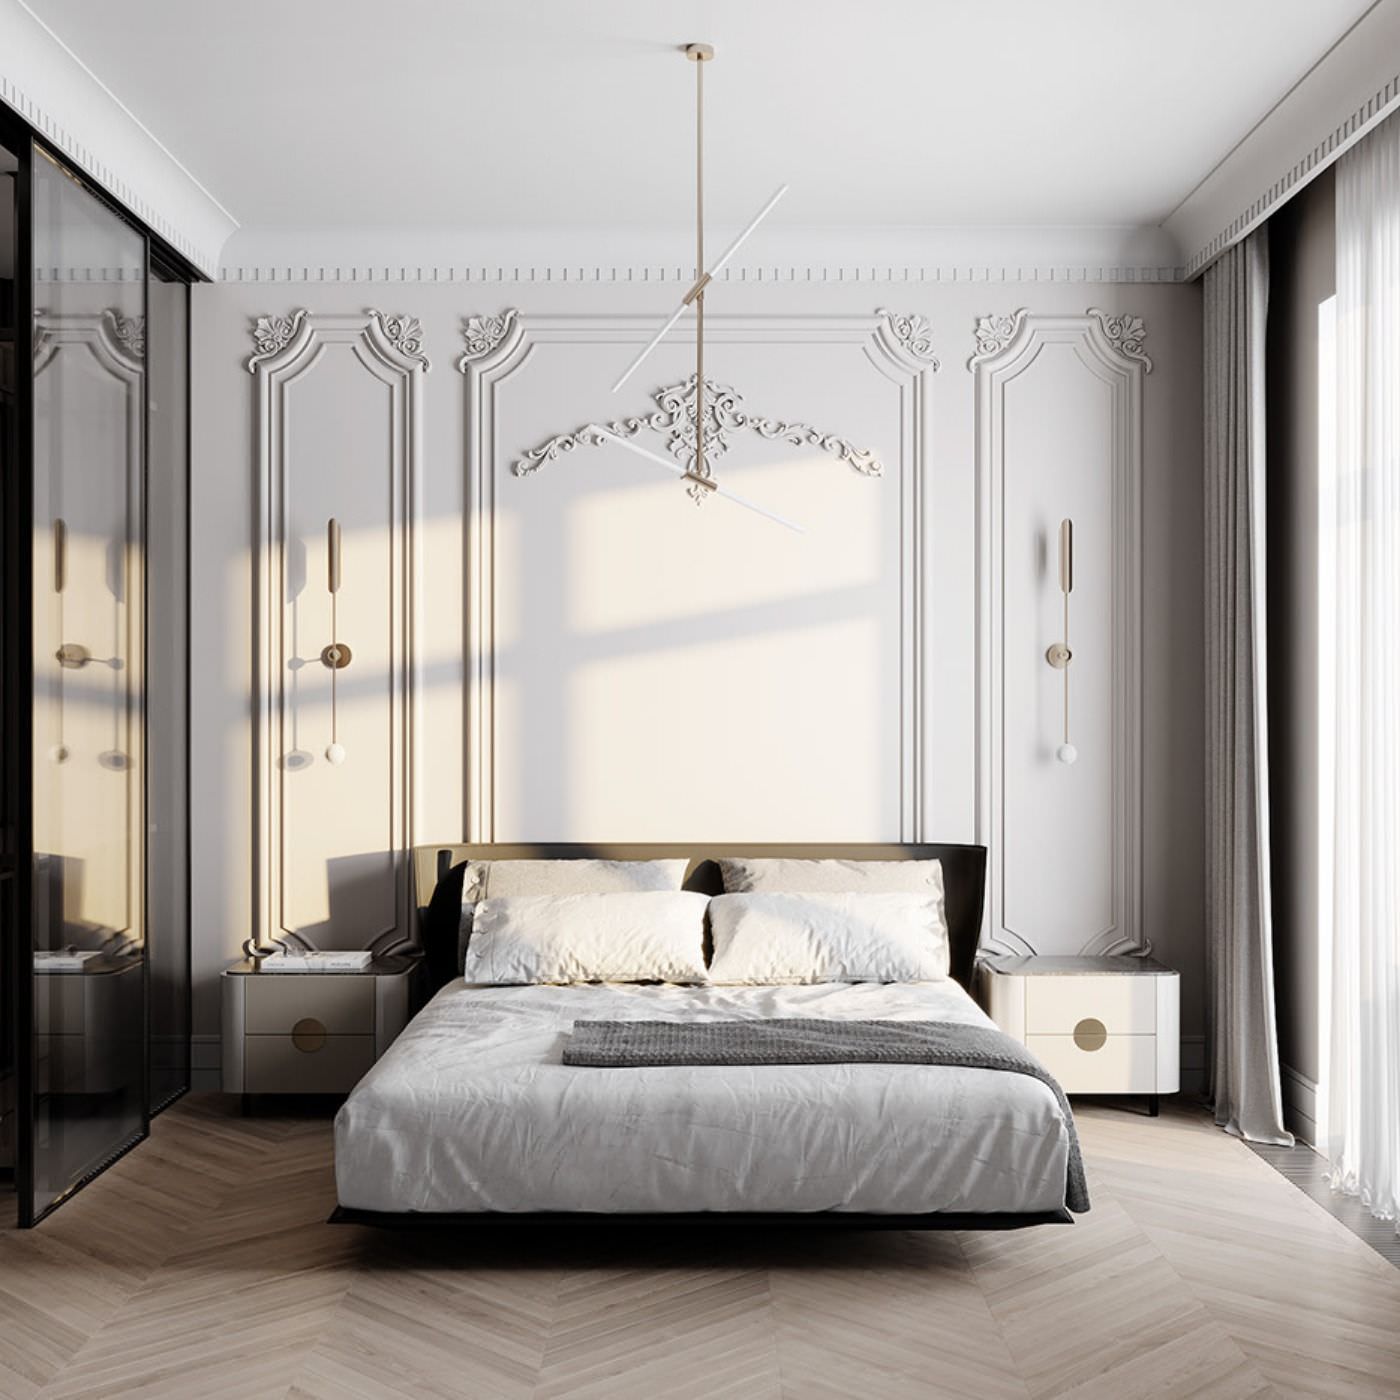 Phòng ngủ màu trắng tân cổ điển nổi bật với cách trang trí tường nhà bằng phào chỉ nổi ấn tượng